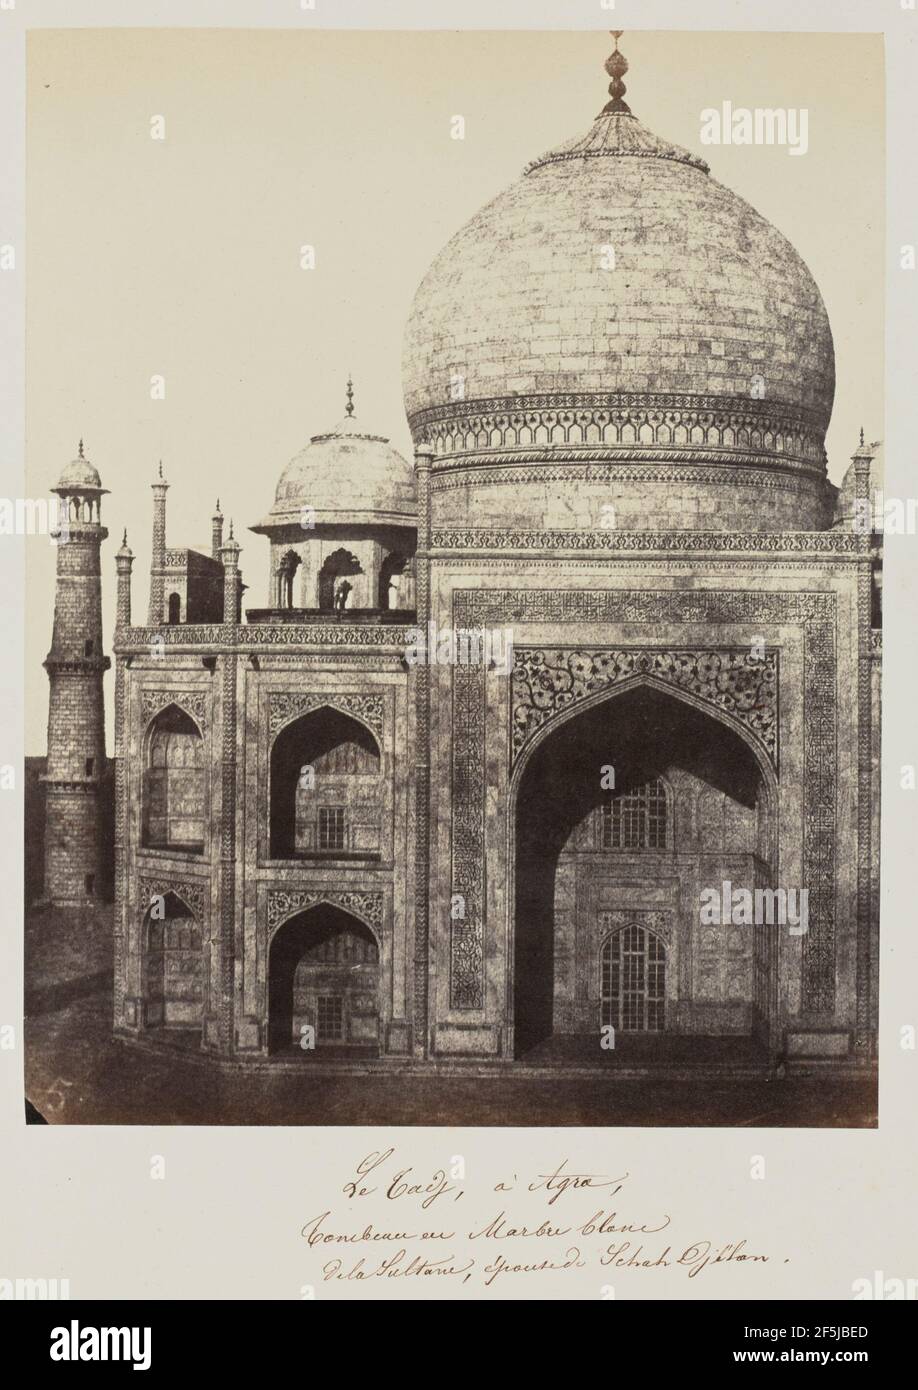 Le Tanj, à Agra, Tombeau en blanco de la Sultane, épise du Schah Djéhan. Barón Alexis de la Grange (francés, 1825 - 1917) Foto de stock